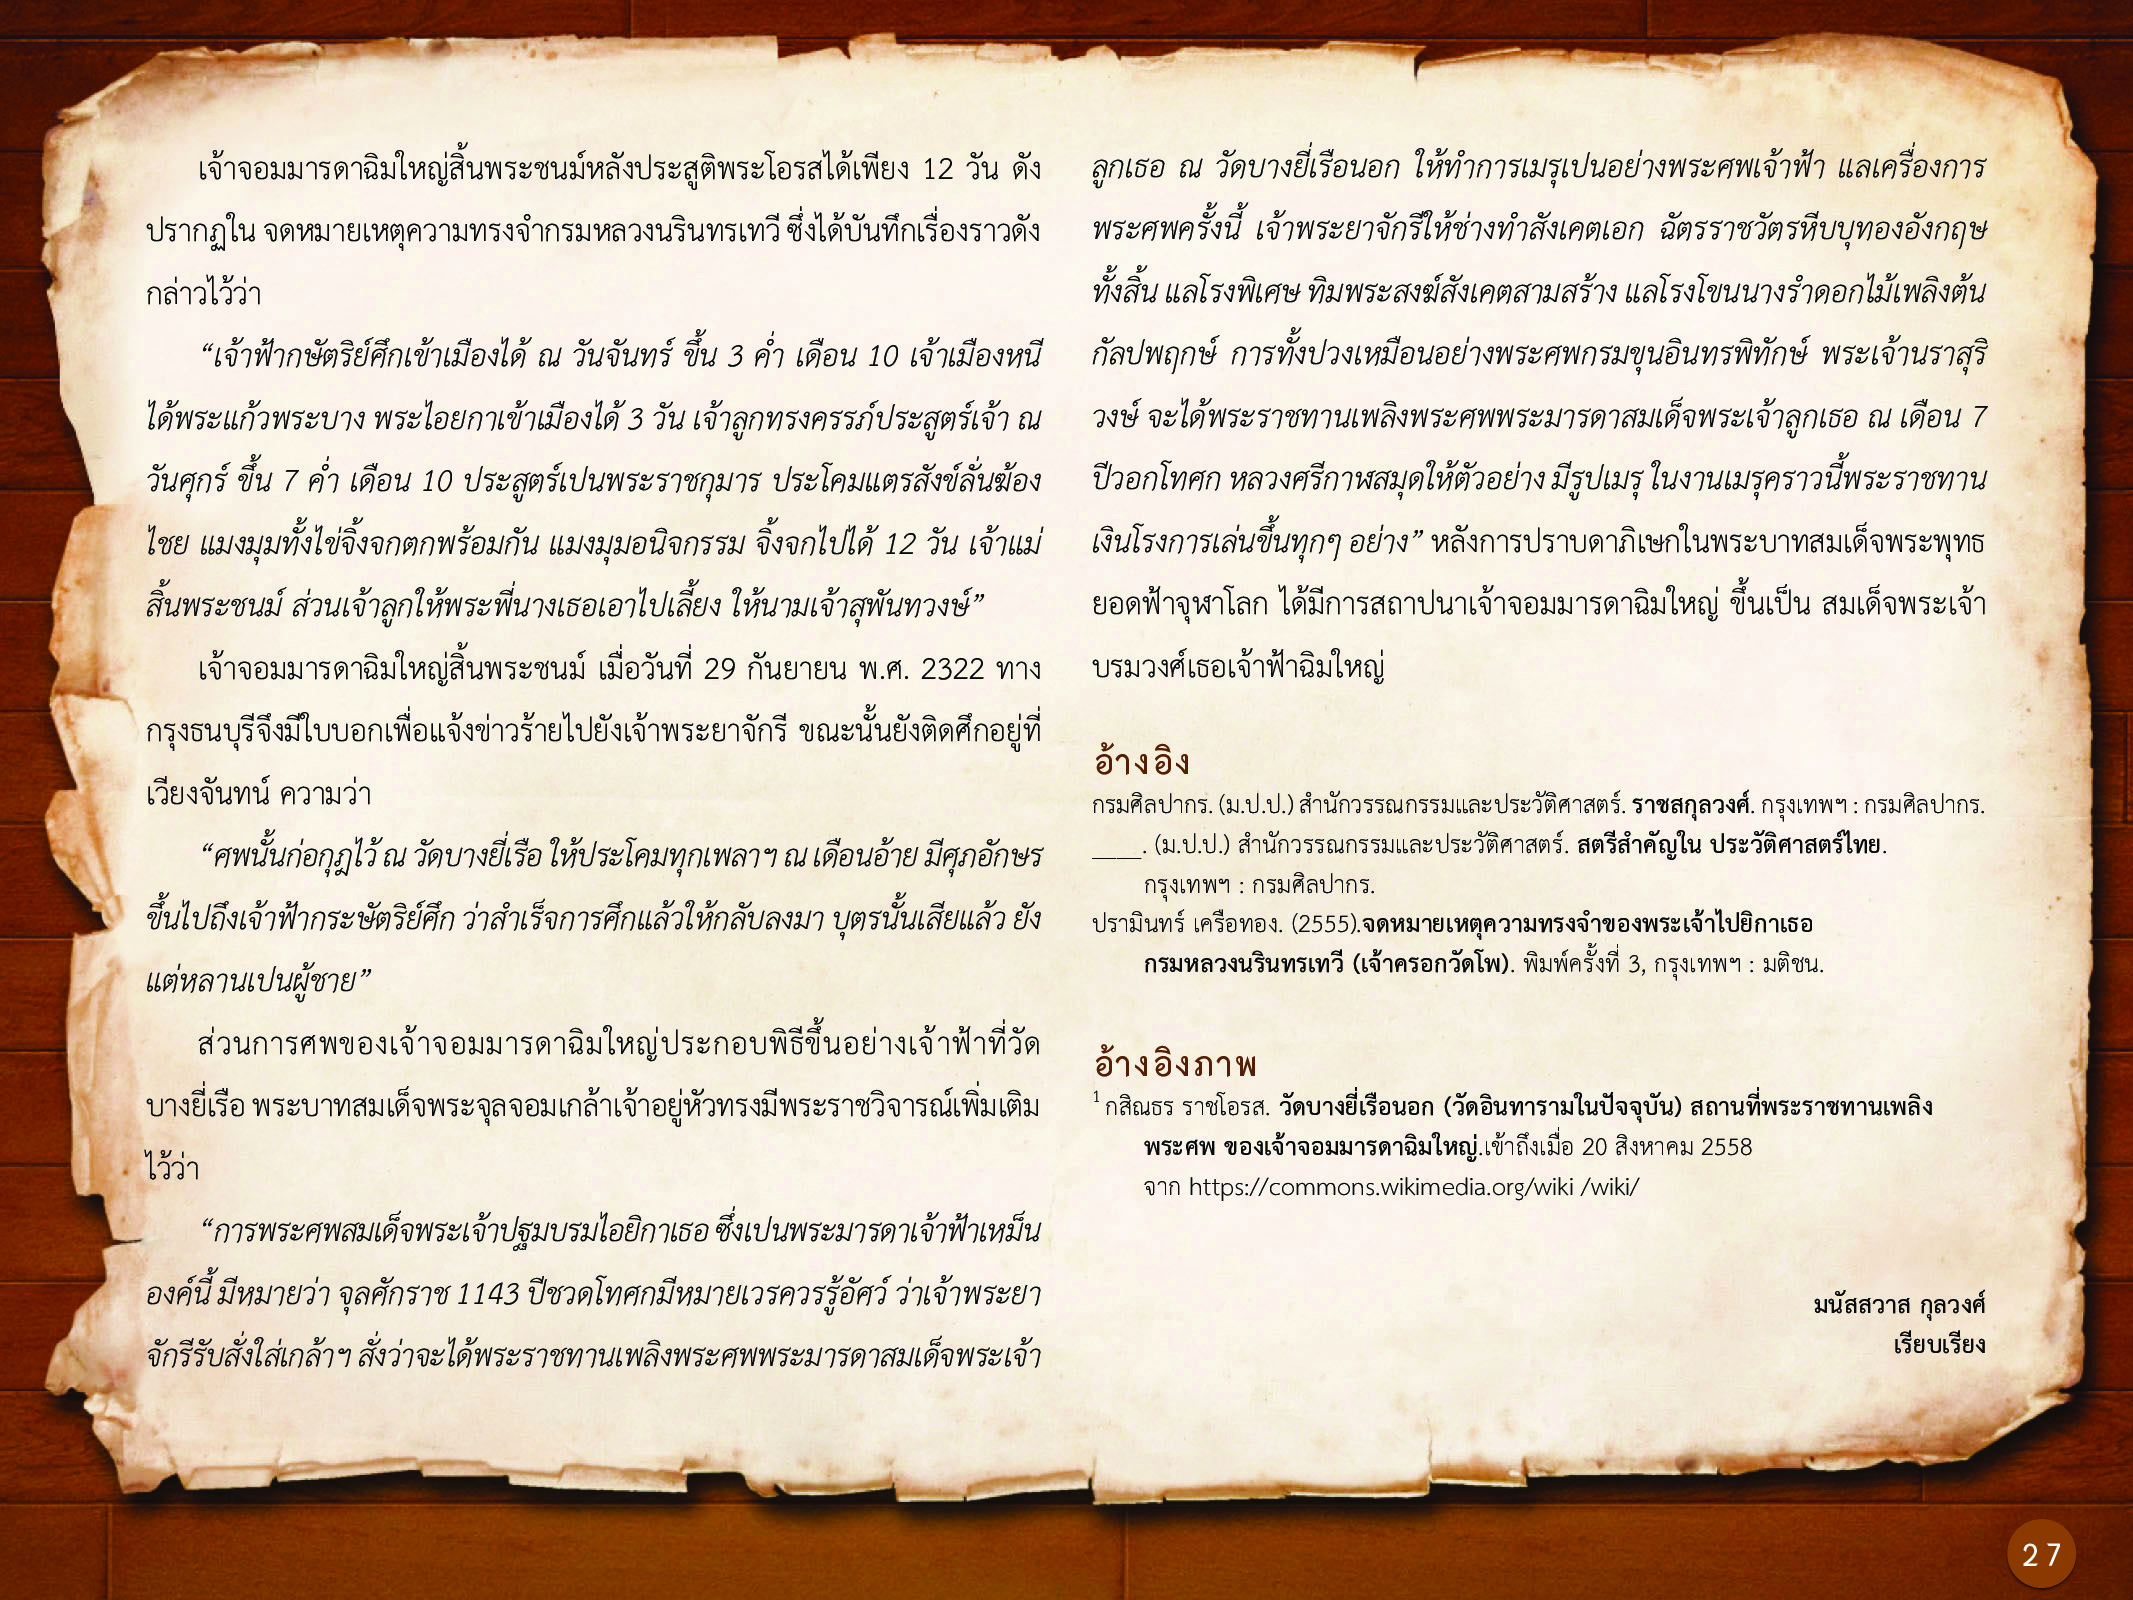 ประวัติศาสตร์กรุงธนบุรี ./images/history_dhonburi/27.jpg